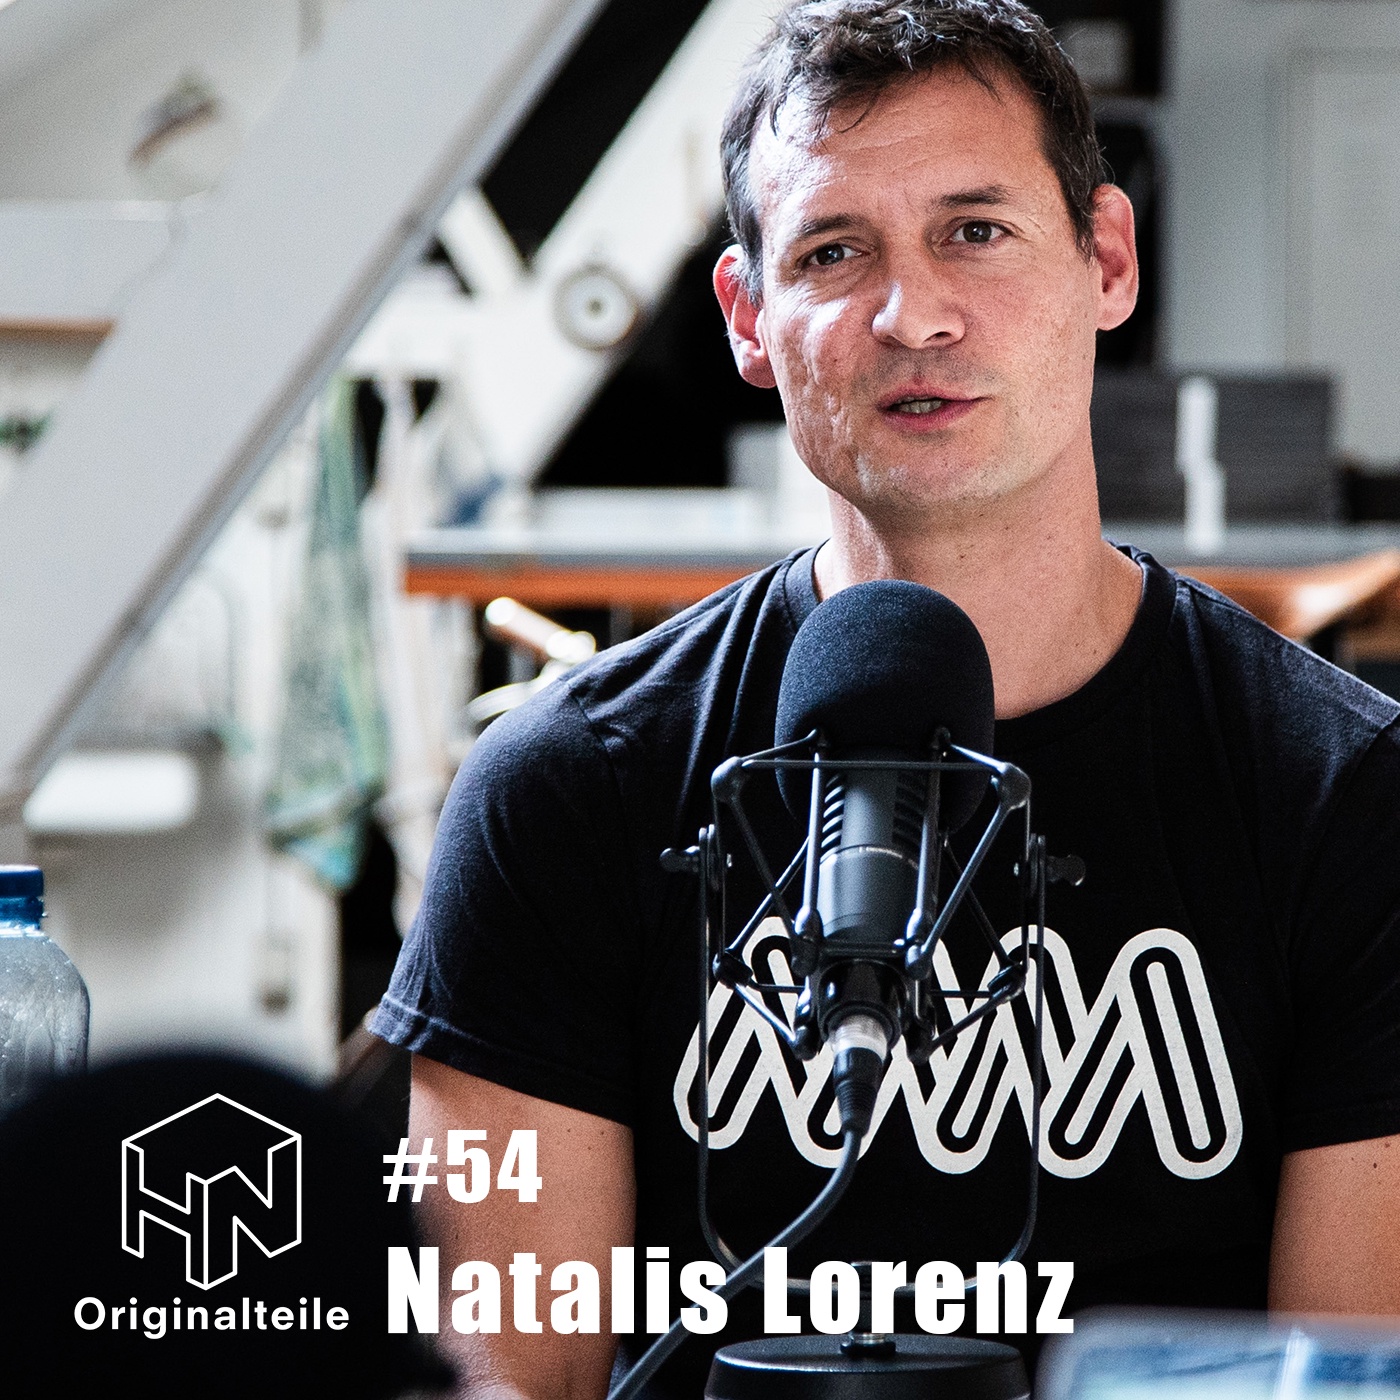 Originalteile-Podcast - Folge #54 mit Natalis Lorenz (Freischaffender Illustrator und Gestalter)